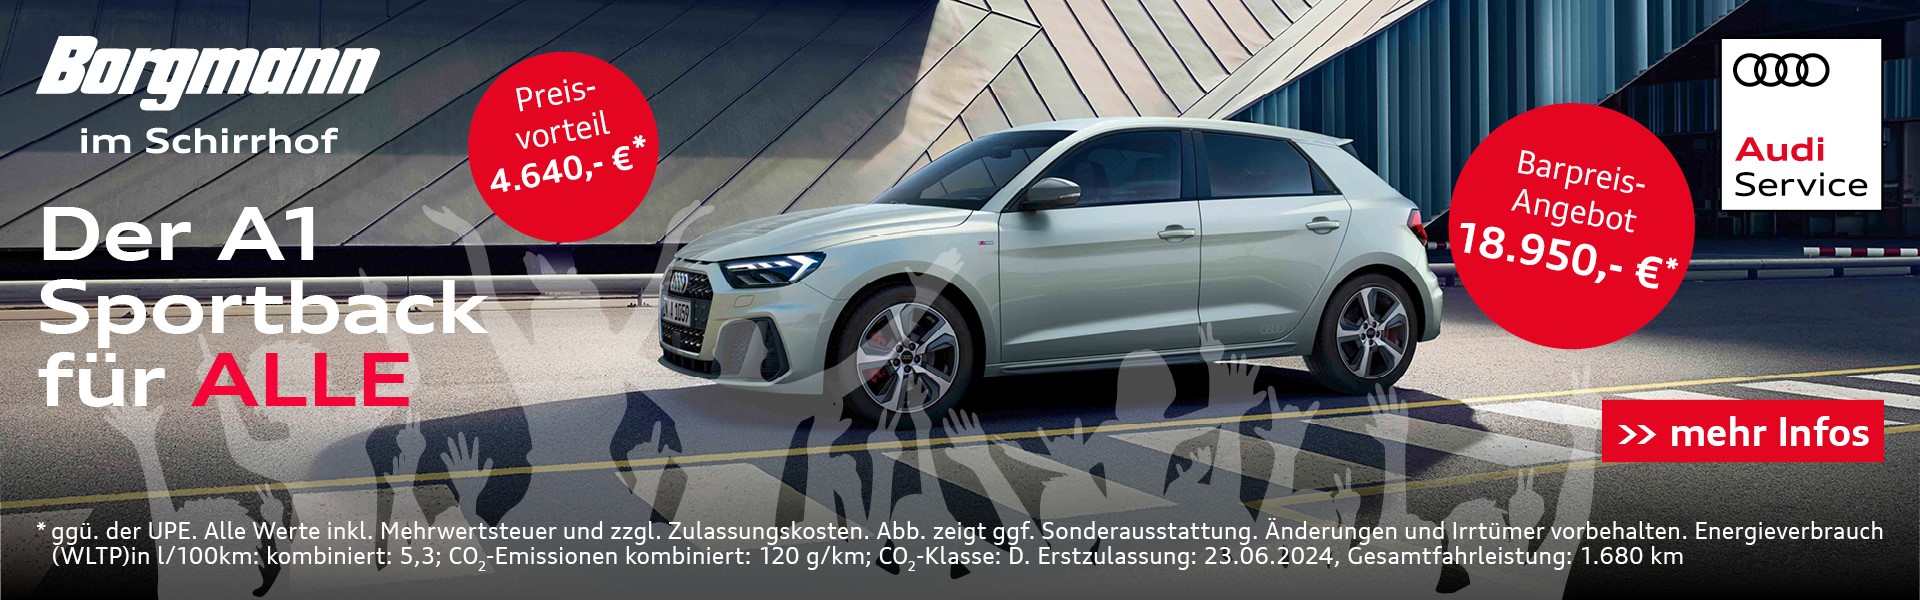 Audi A1 für alle bei Borgmann im Schirrhof